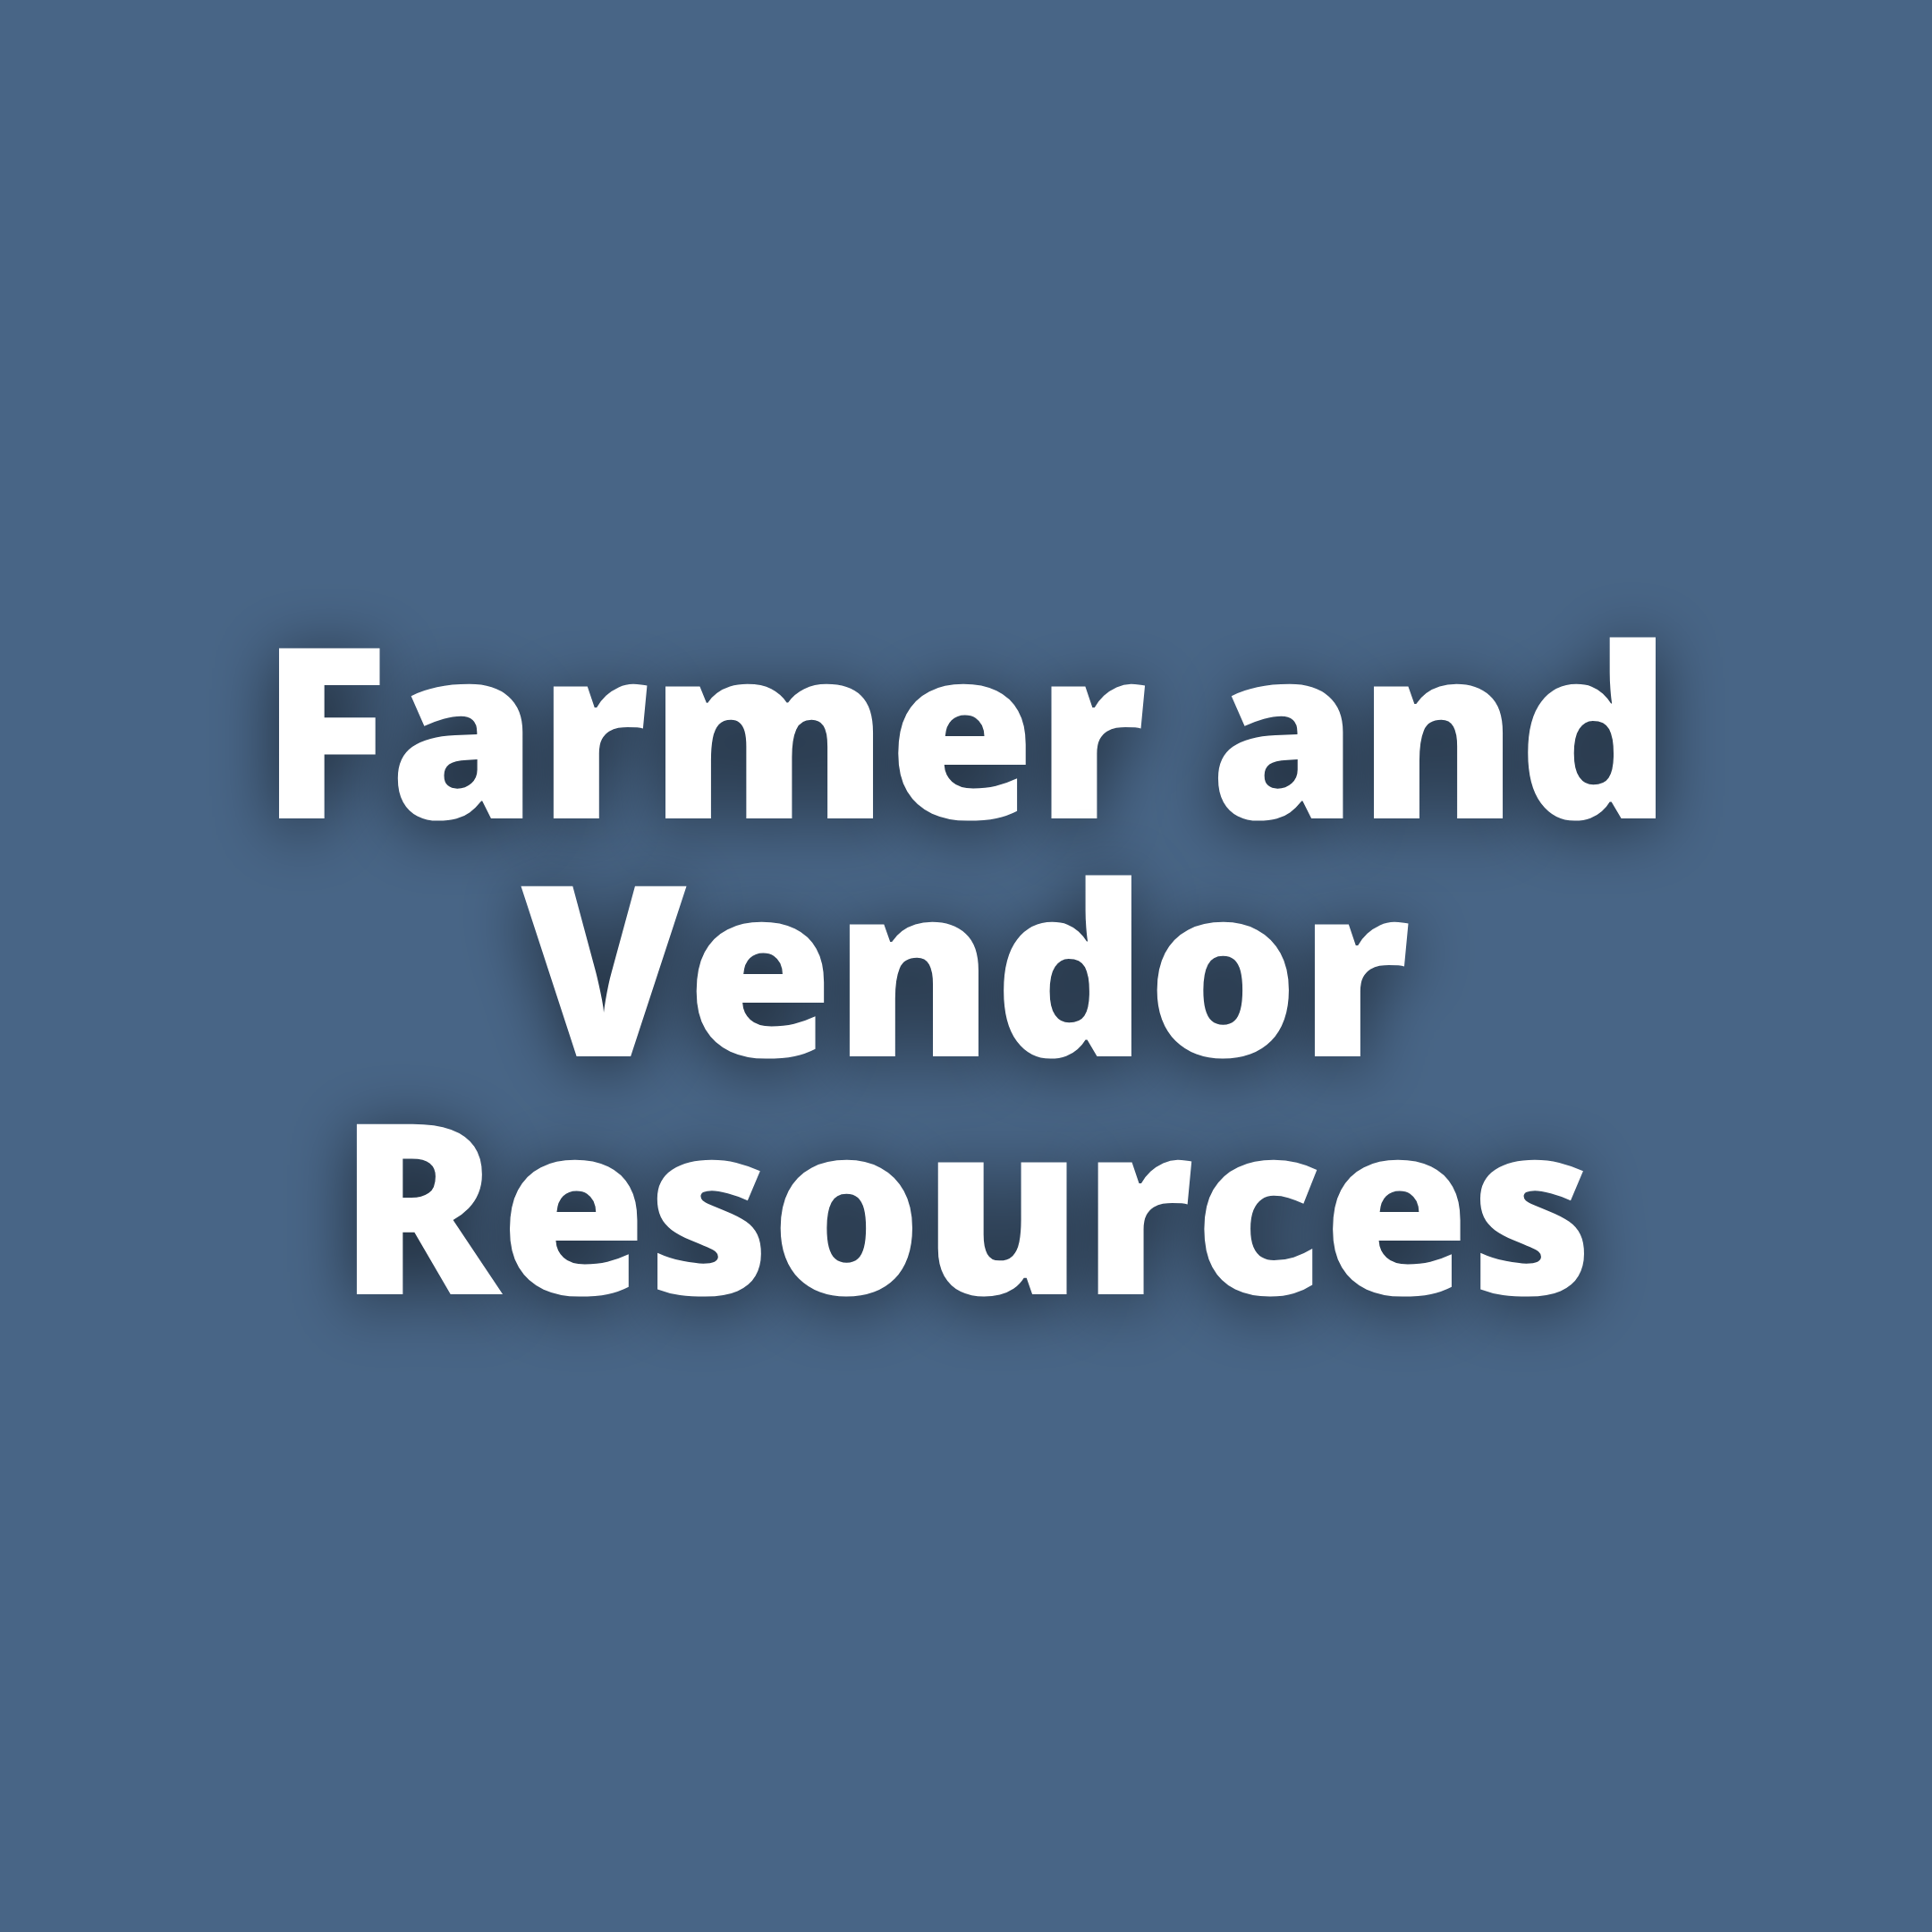 FarmerVendor Resources.png